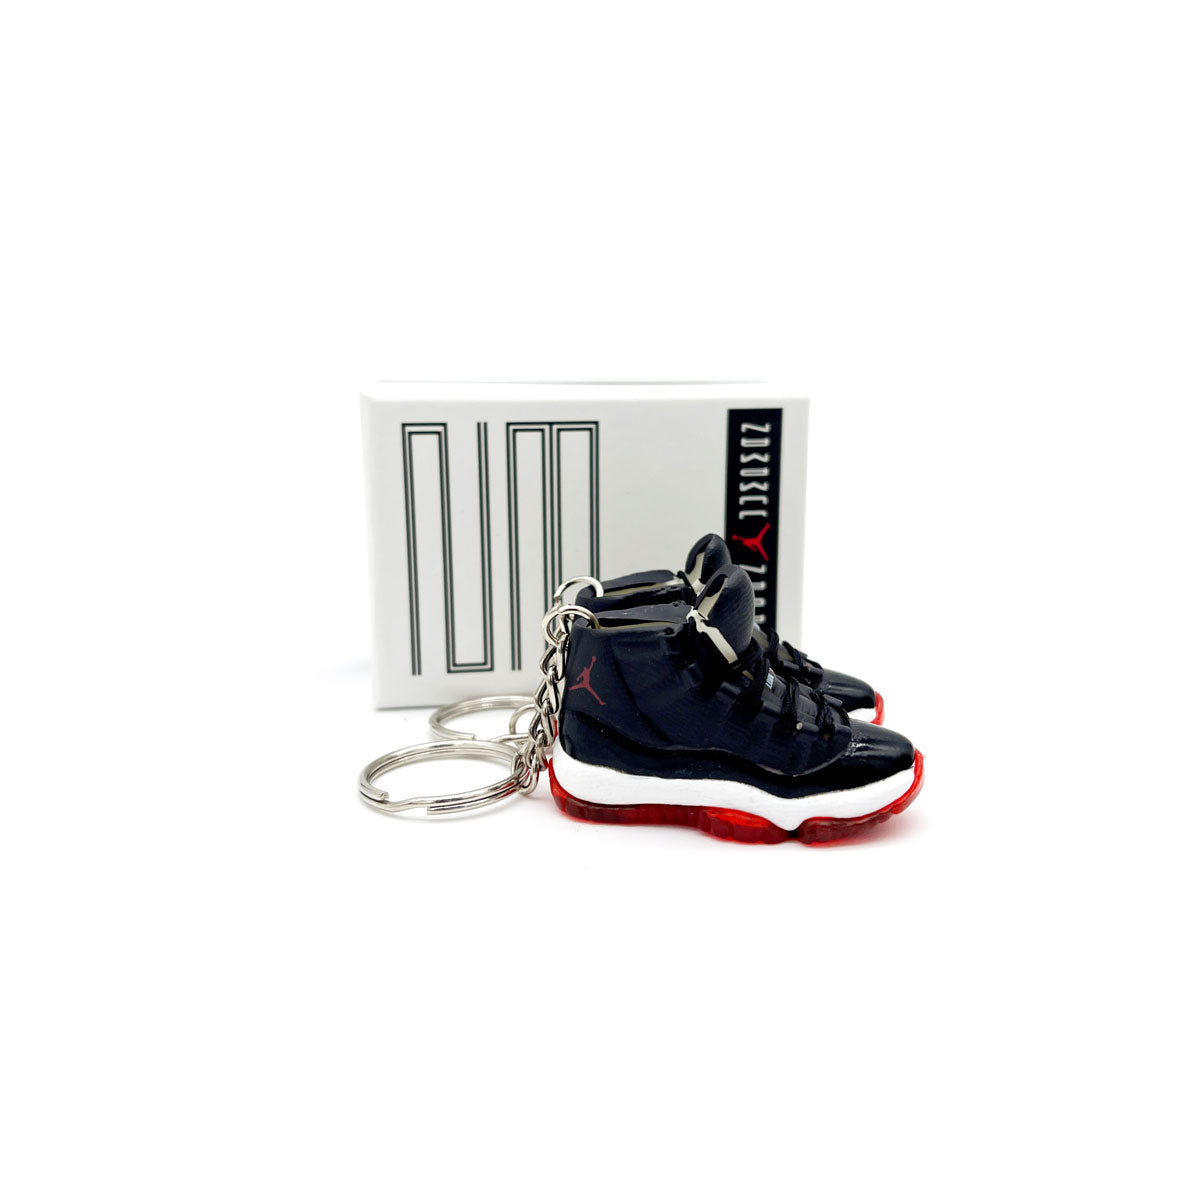 3D Sneaker Keychain- Air Jordan 11 Playoff 'Bred' Pair